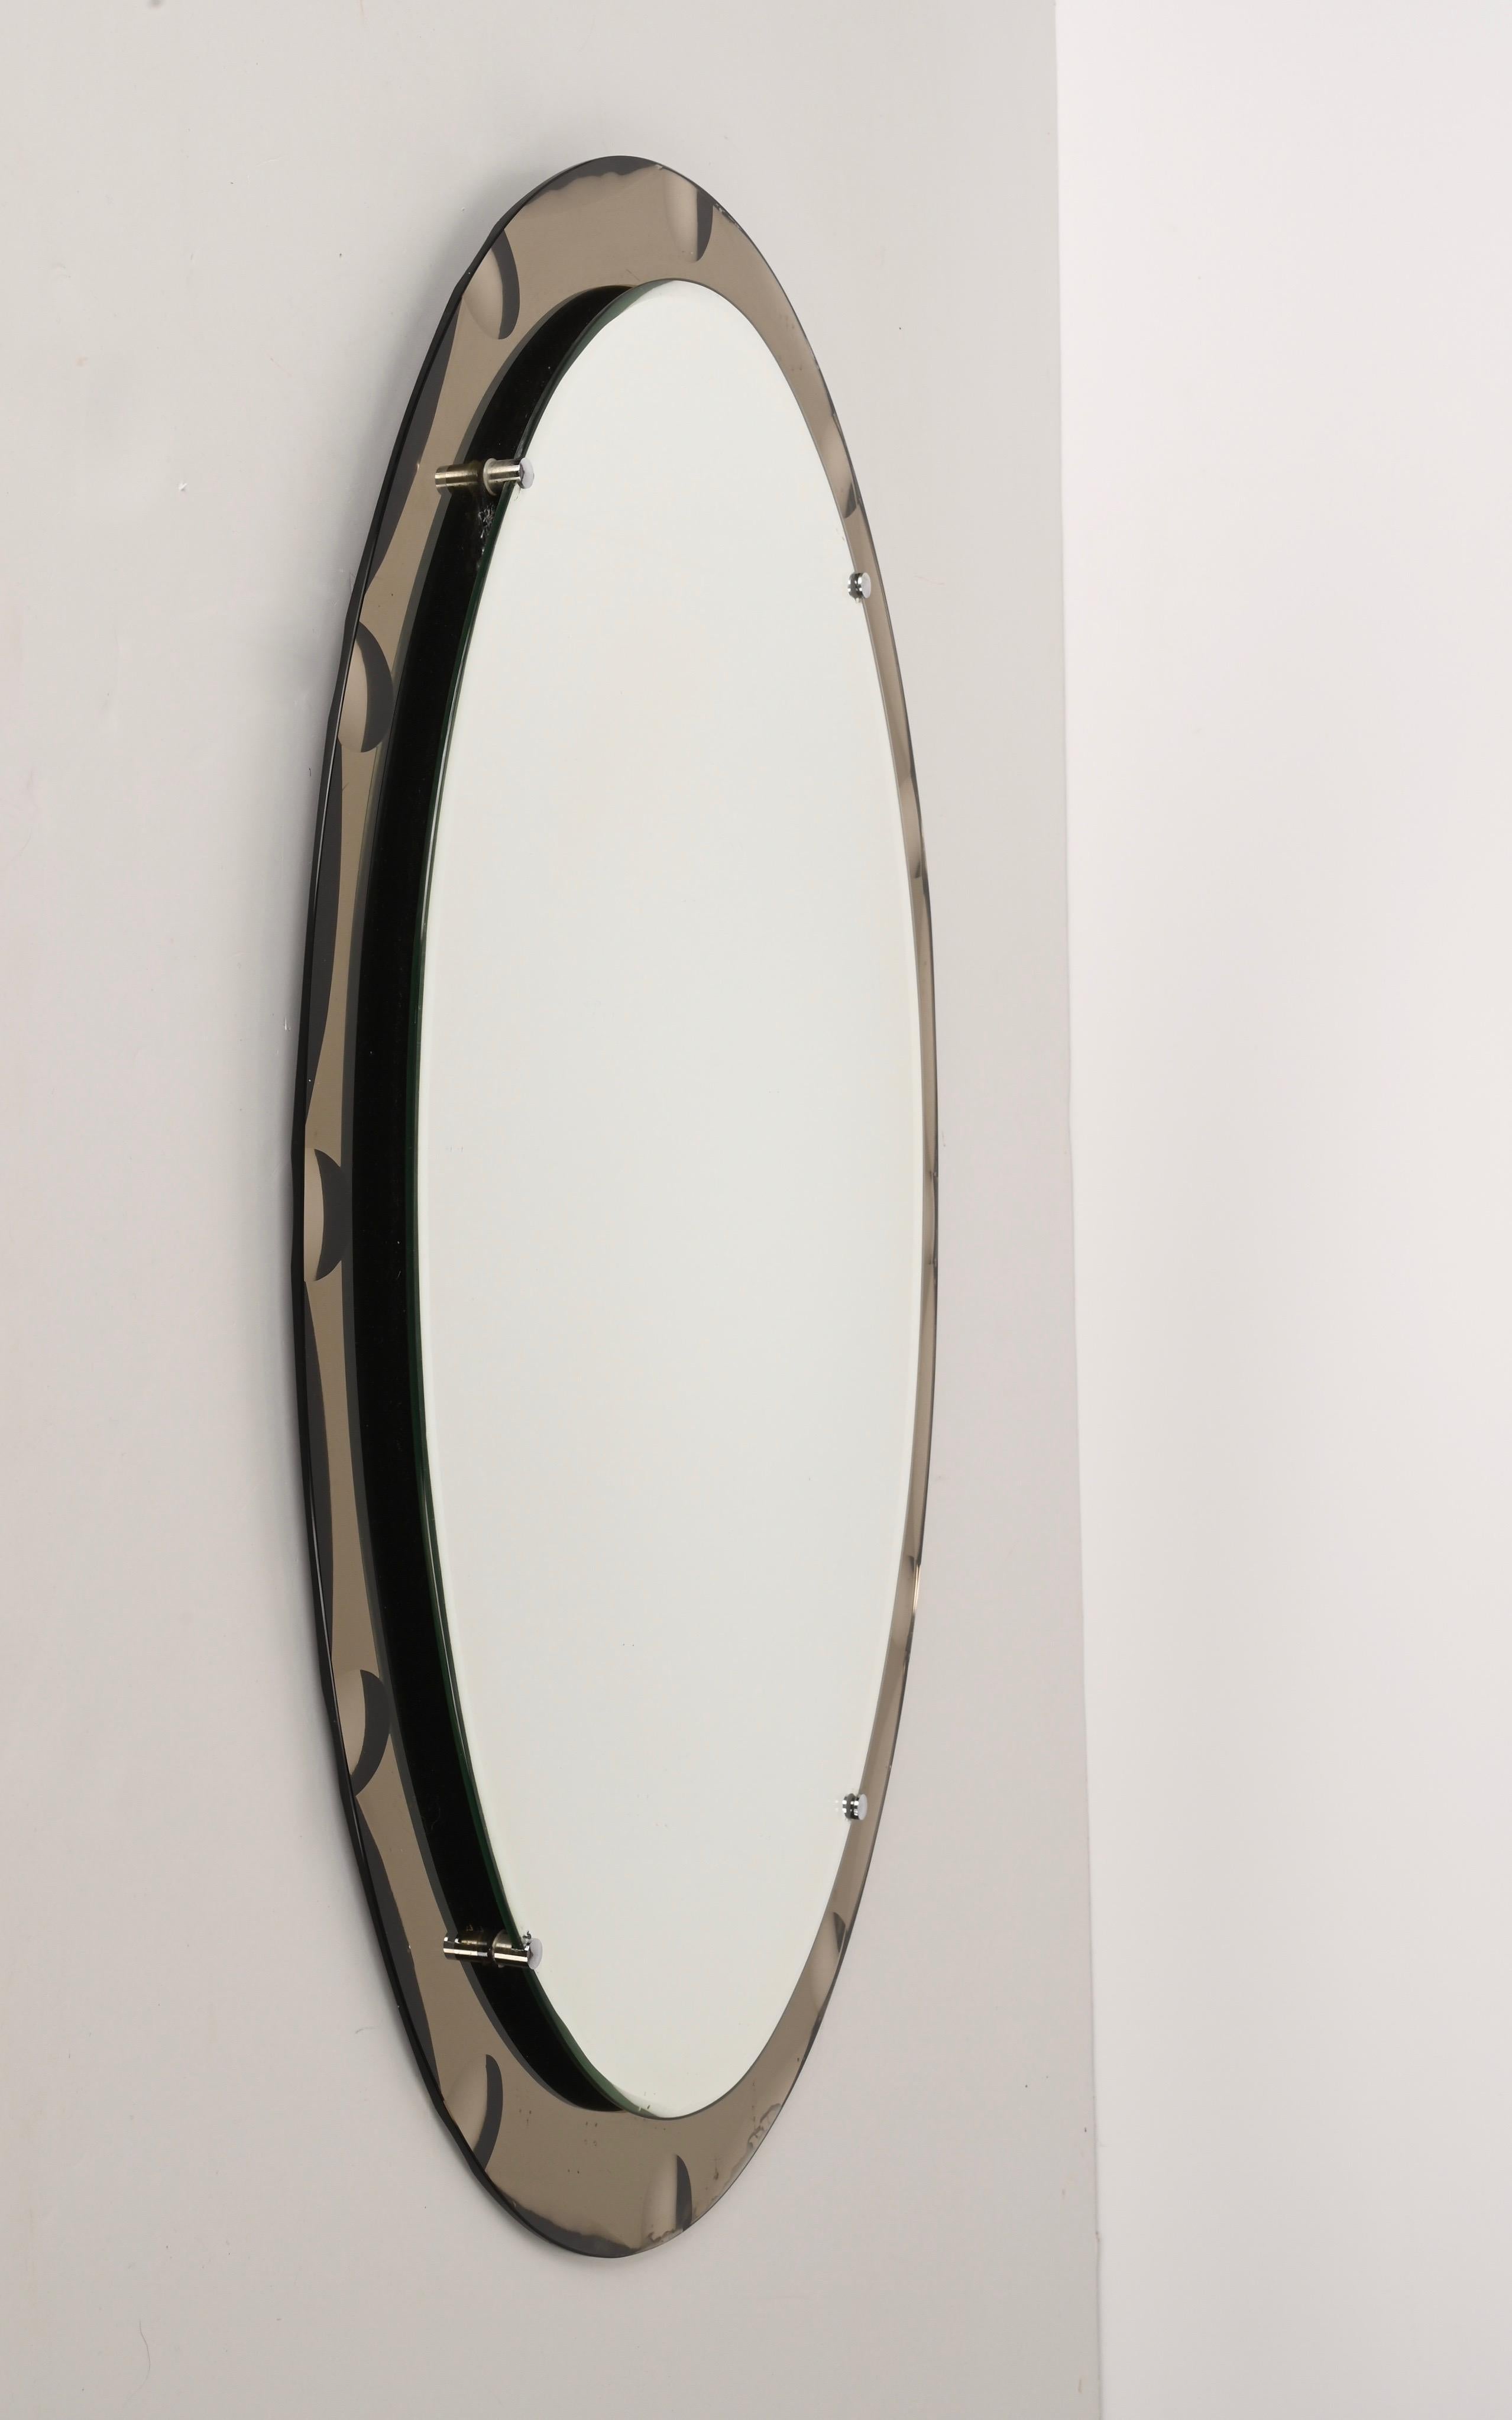 Magnifique miroir ovale du milieu du siècle dernier avec cadre en gravure de bronze. Ce miroir a été conçu en Italie dans le style de Cristal Arte dans les années 1960.

Cette pièce est un exemple d'excellente qualité artisanale italienne avec une